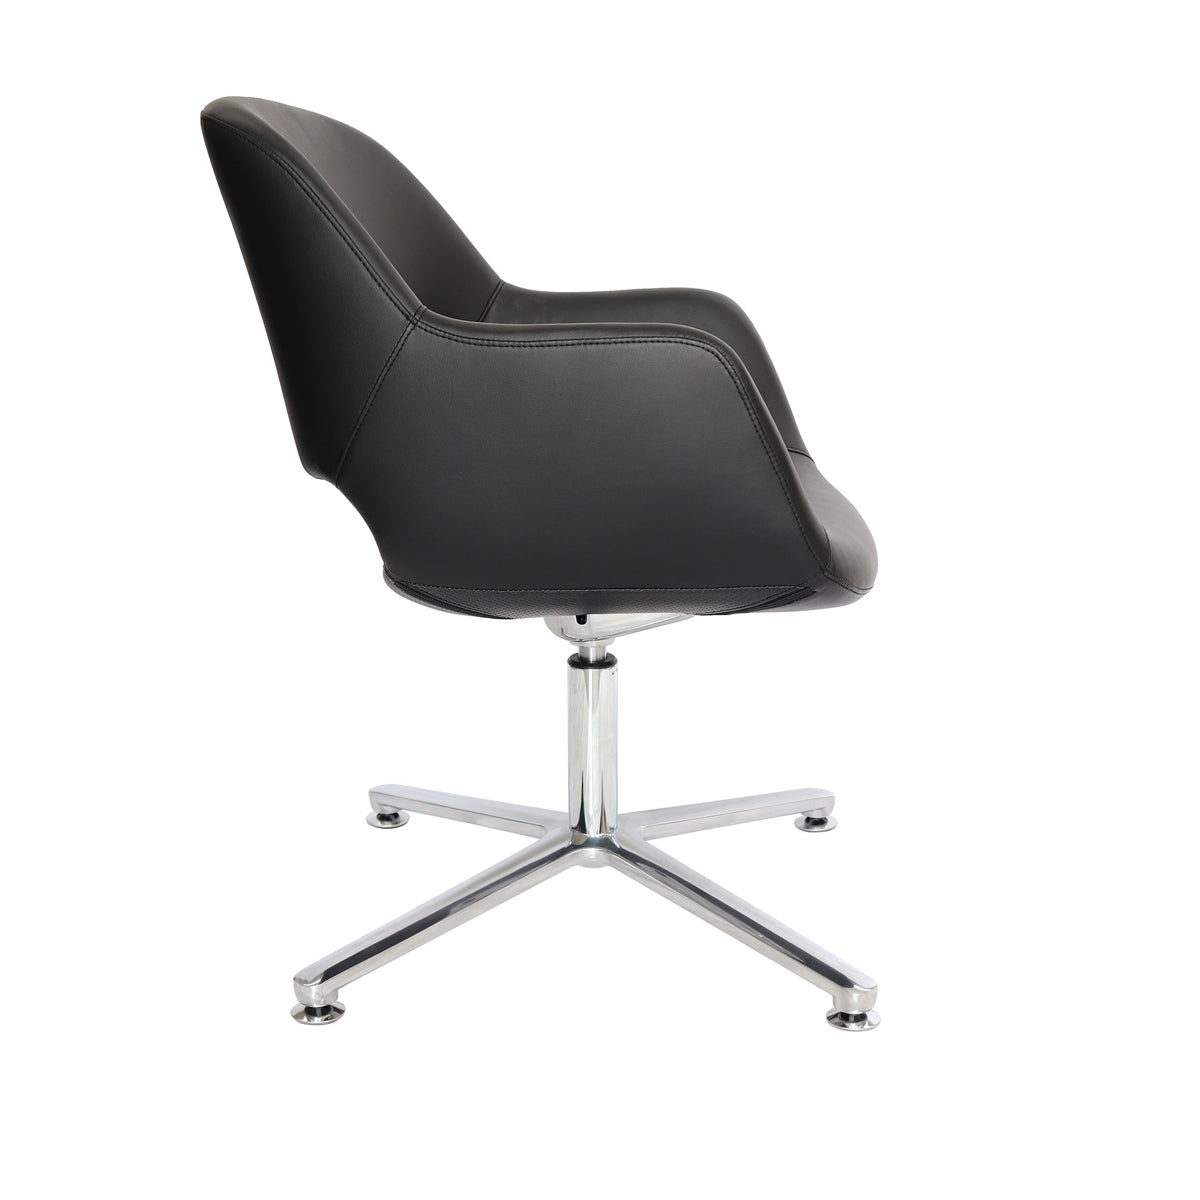 Silla de visita Wicker OHE-140 respaldo y asiento tapizado en leather negro con base aluminio